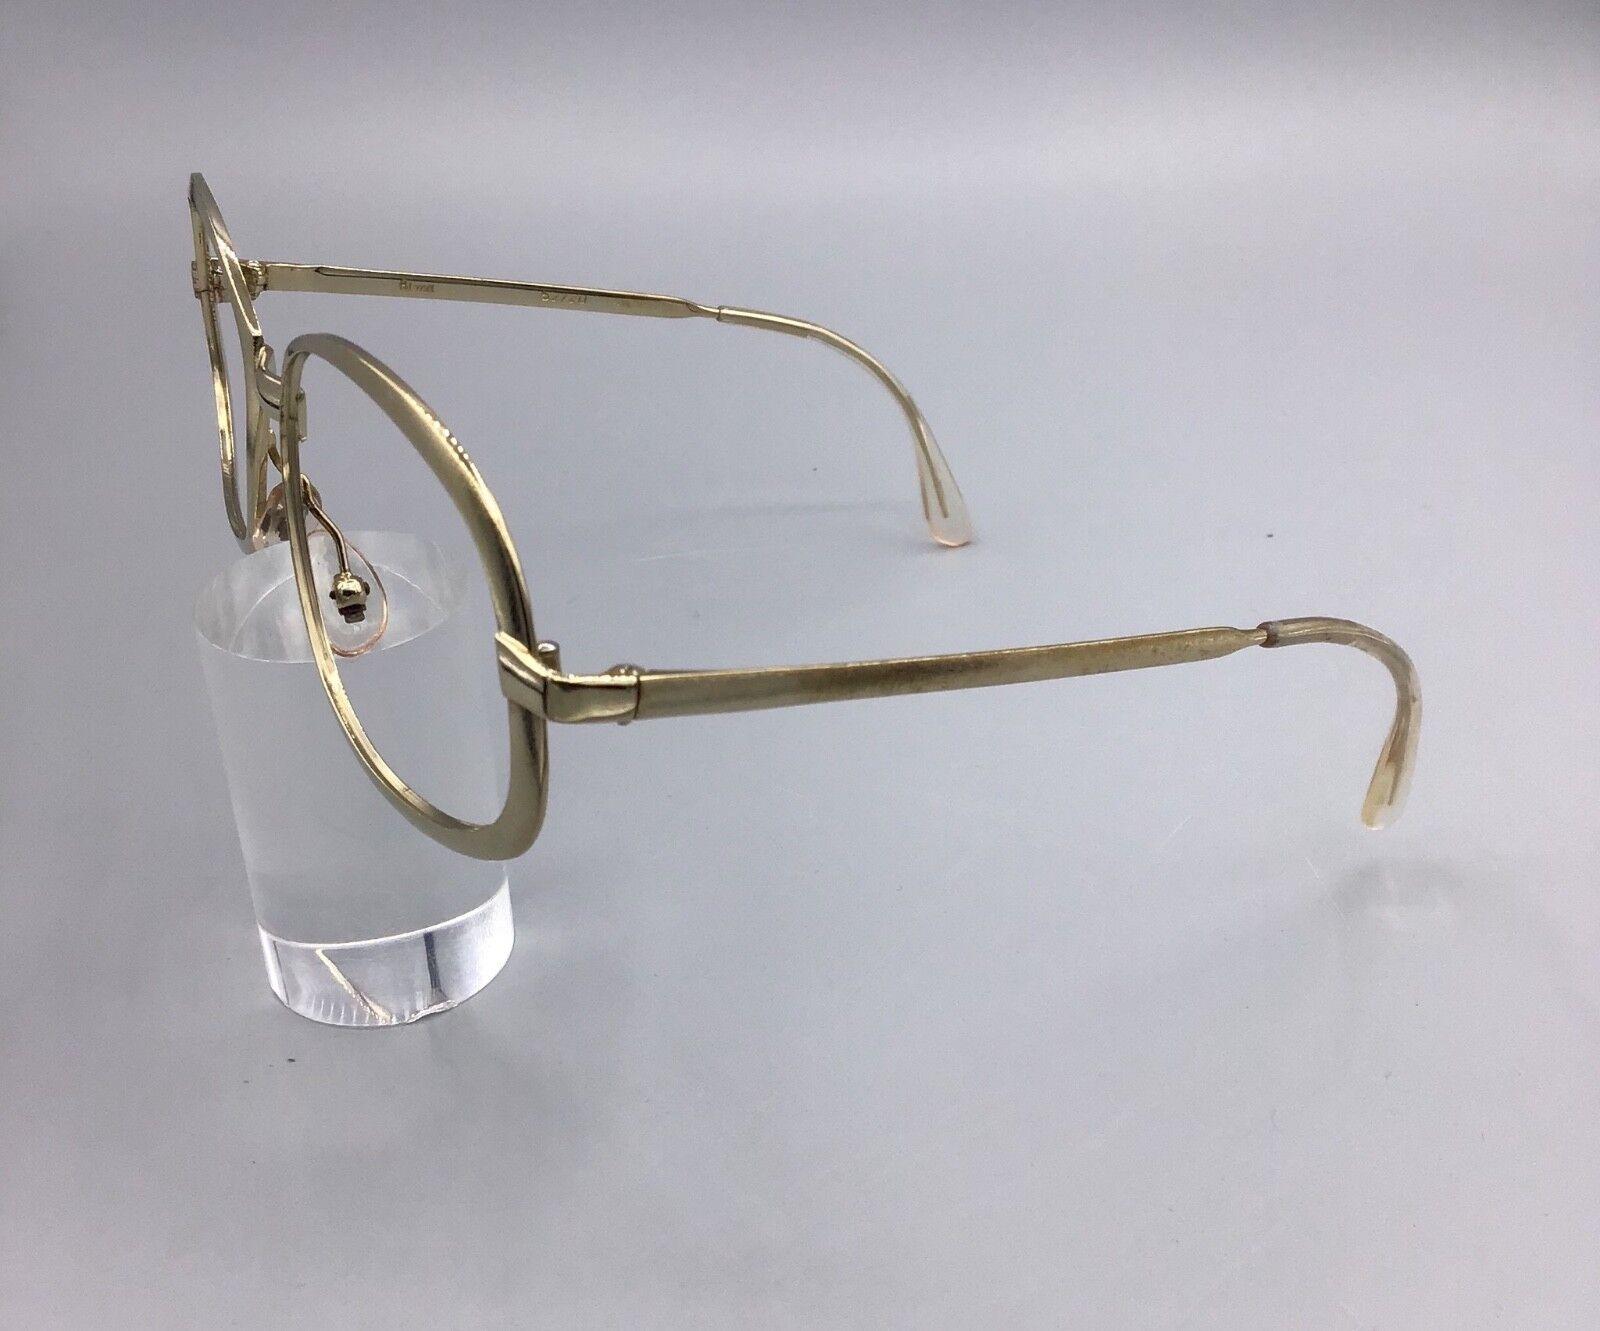 Rima Britt occhiale vintage Eyewear lunettes brillen gold oro laminated